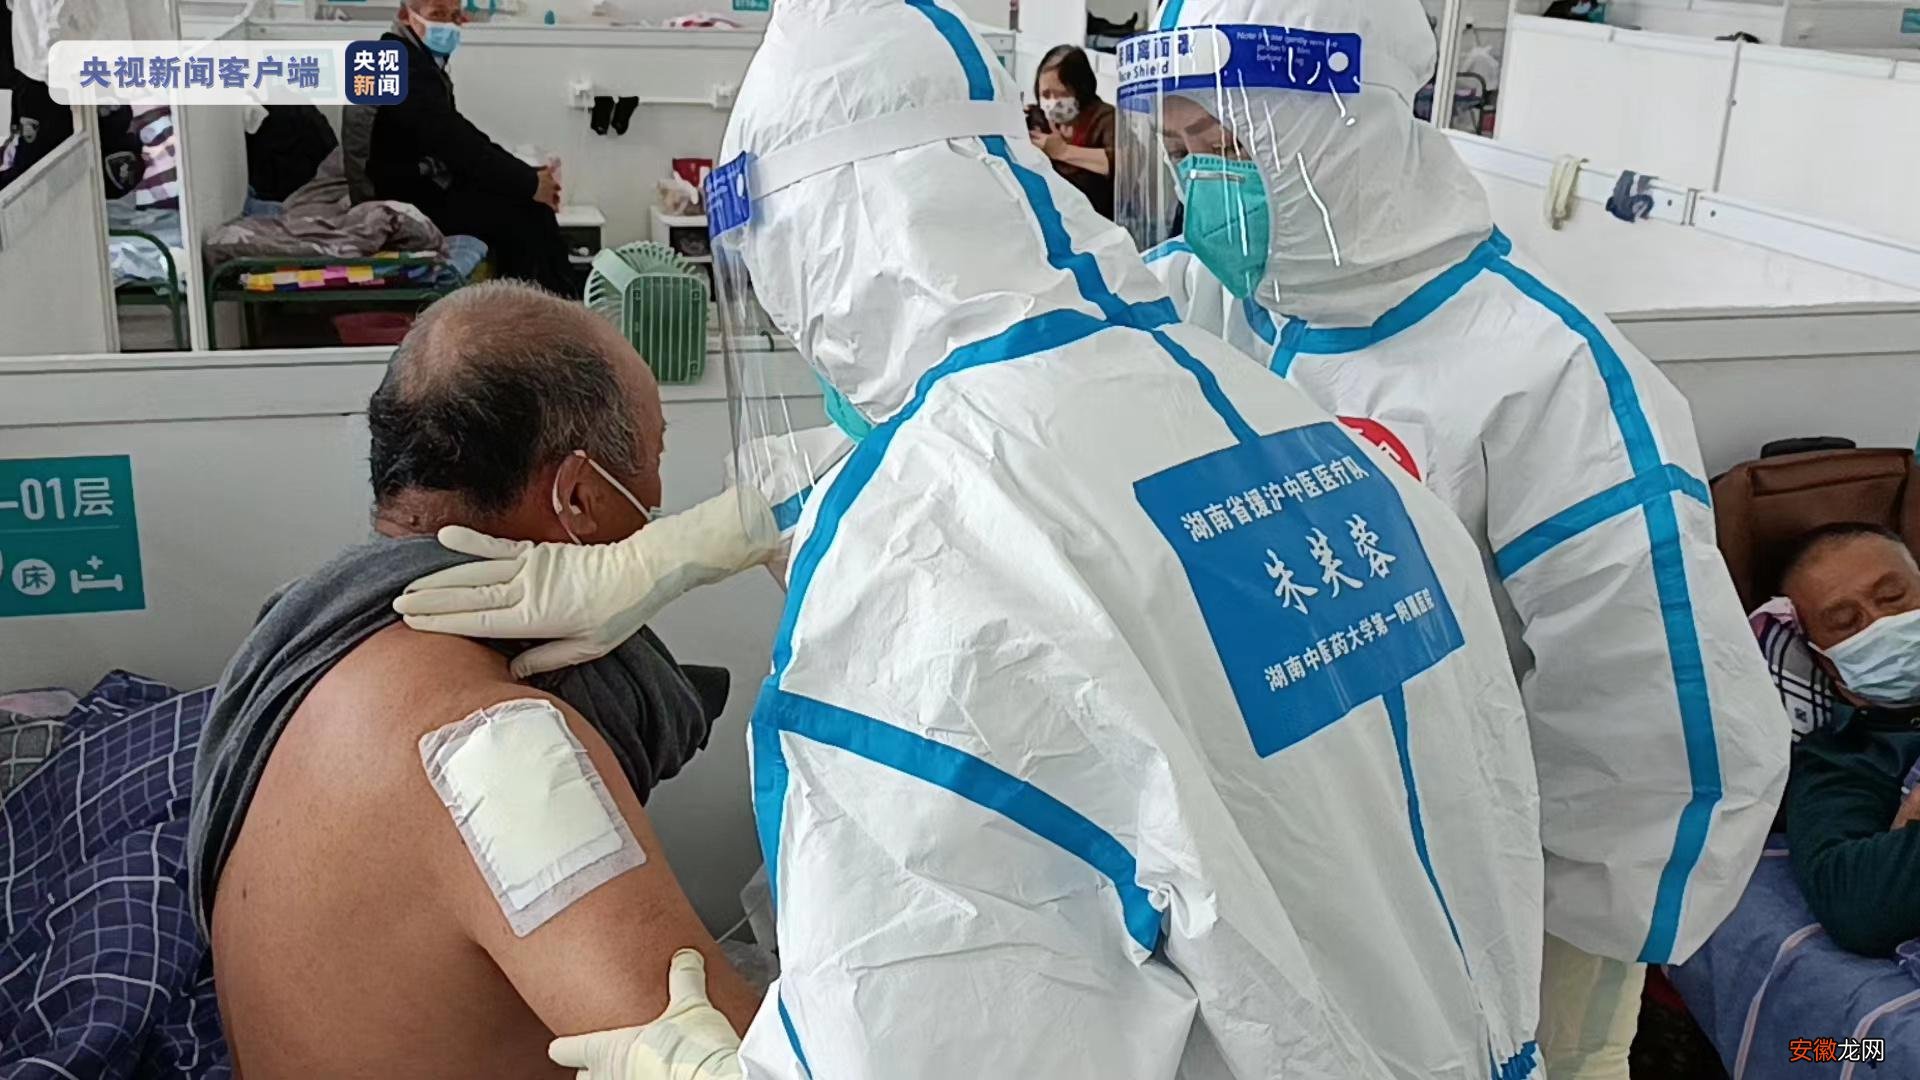 上海古丹路方舱医院首批新冠肺炎患者出院